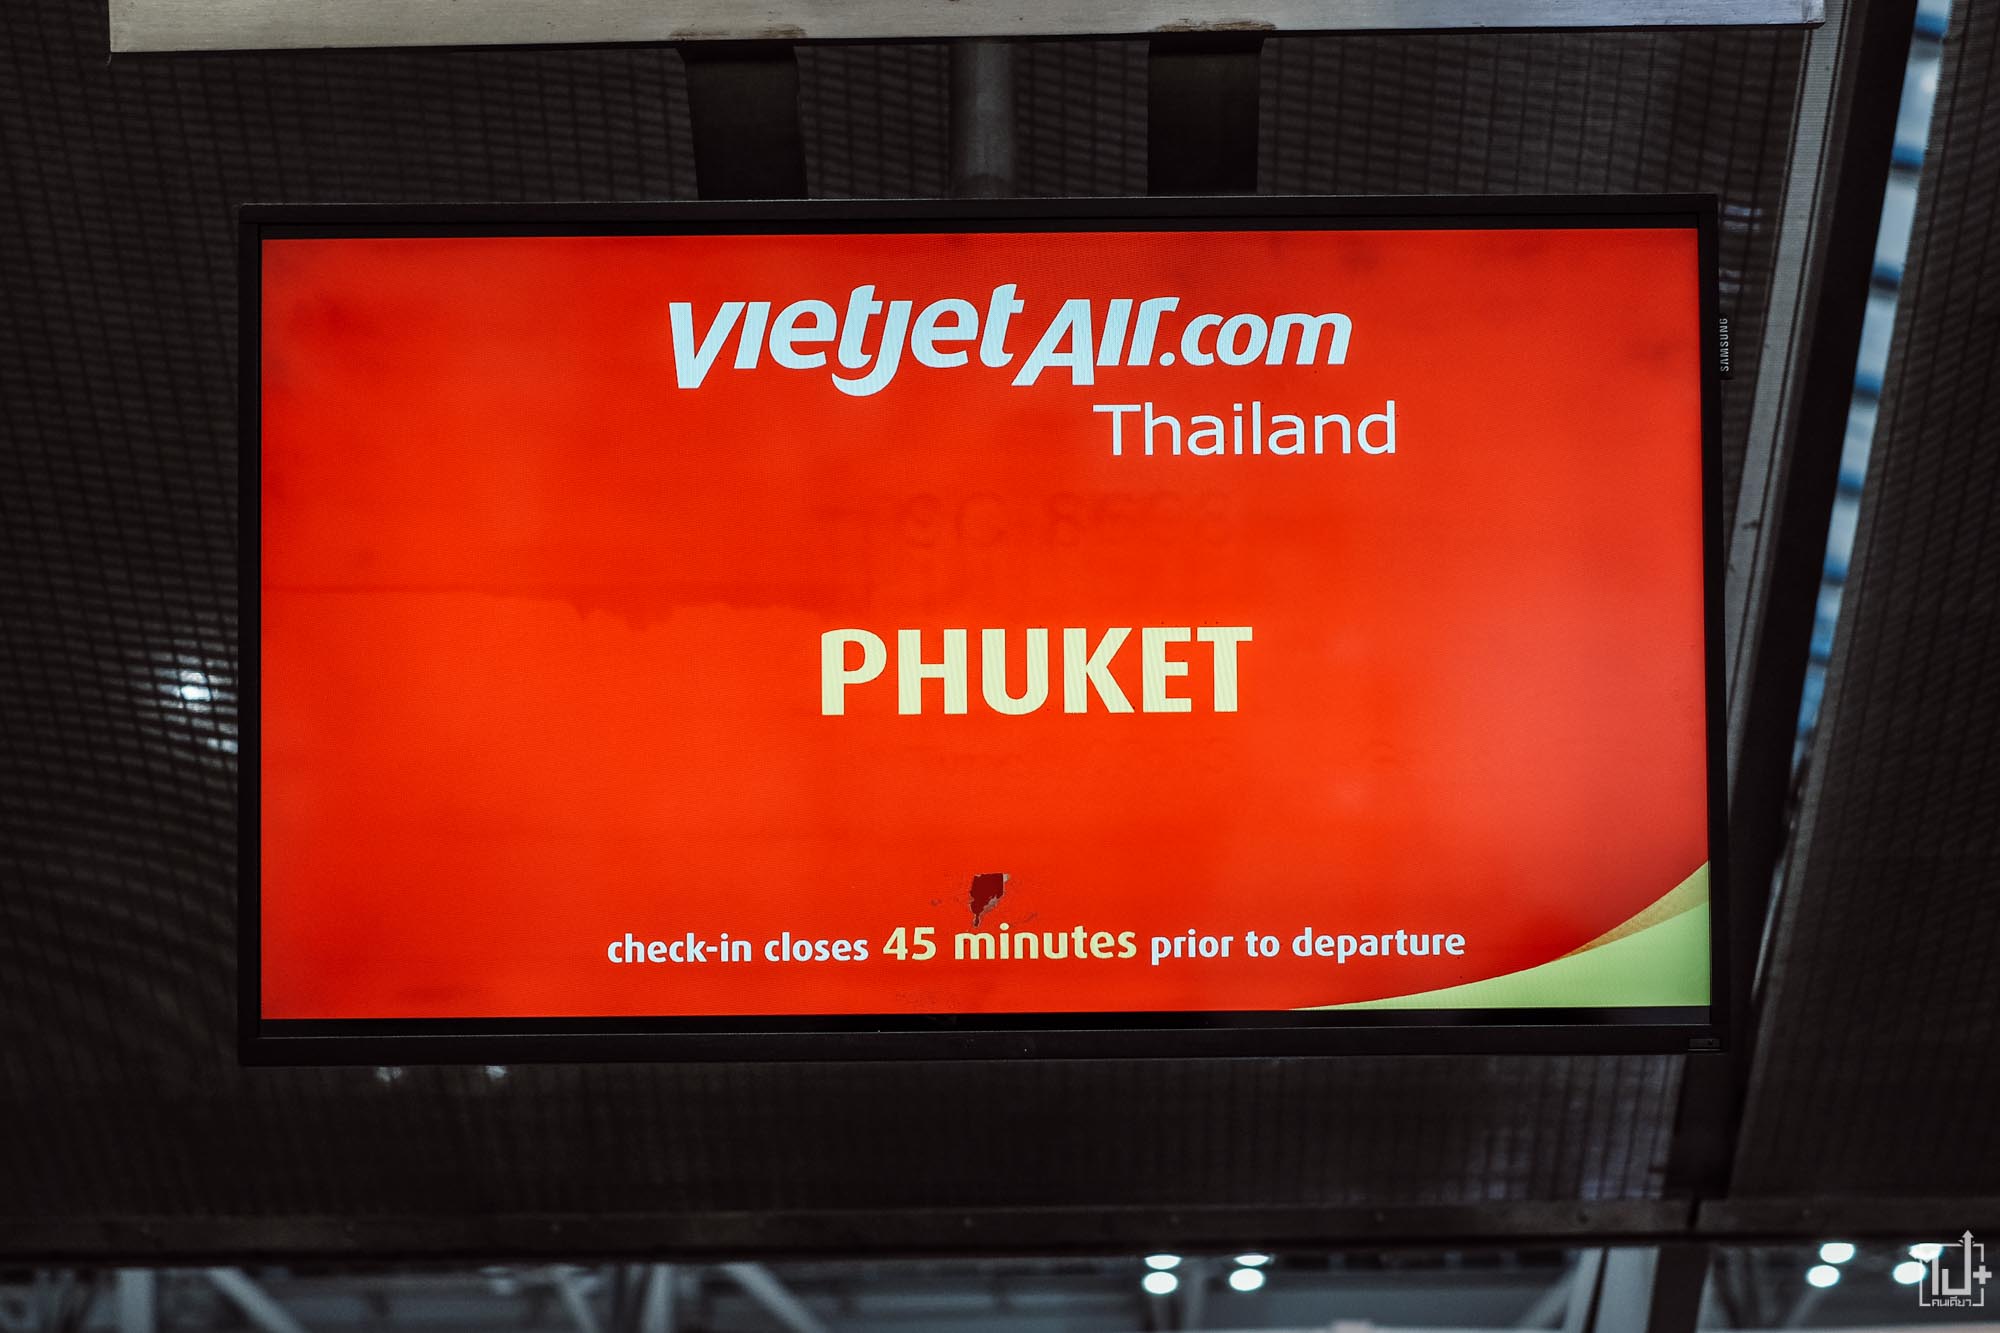 #ThaiVietjet #ไทยเวียตเจ็ทวันเดย์ทริป #ไทยเวียตเจ็ท #ทัวร์เกาะพีพี #ภูเก็ต #ร้านน่านั่ง #ที่เที่ยวภูเก็ต #จุดเช็คอินภูเก็ต